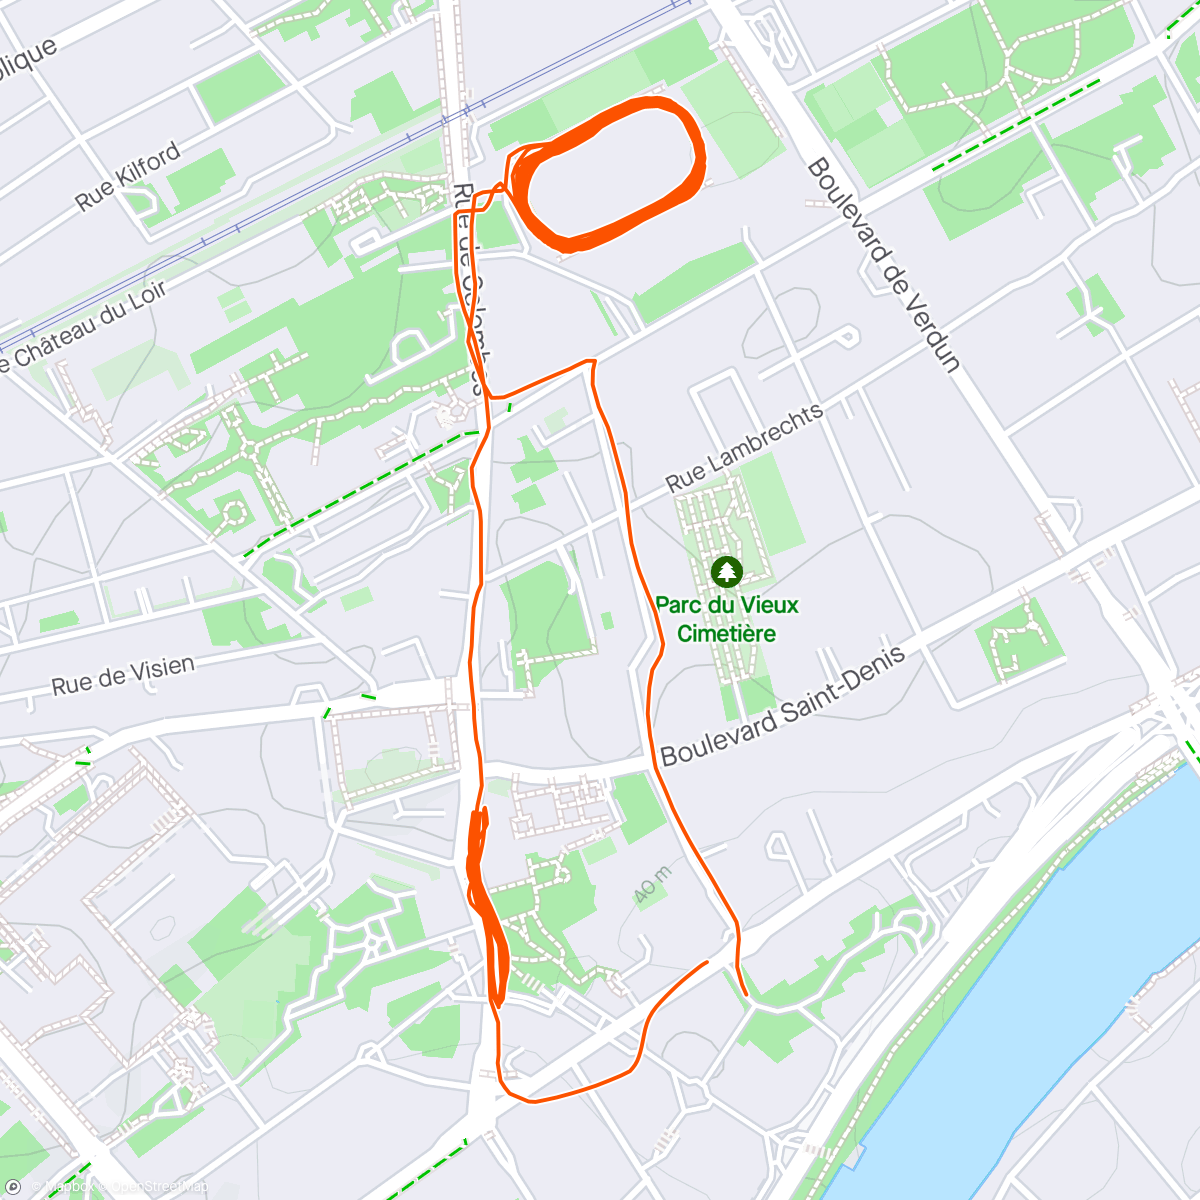 Mapa da atividade, Course à pied le midi